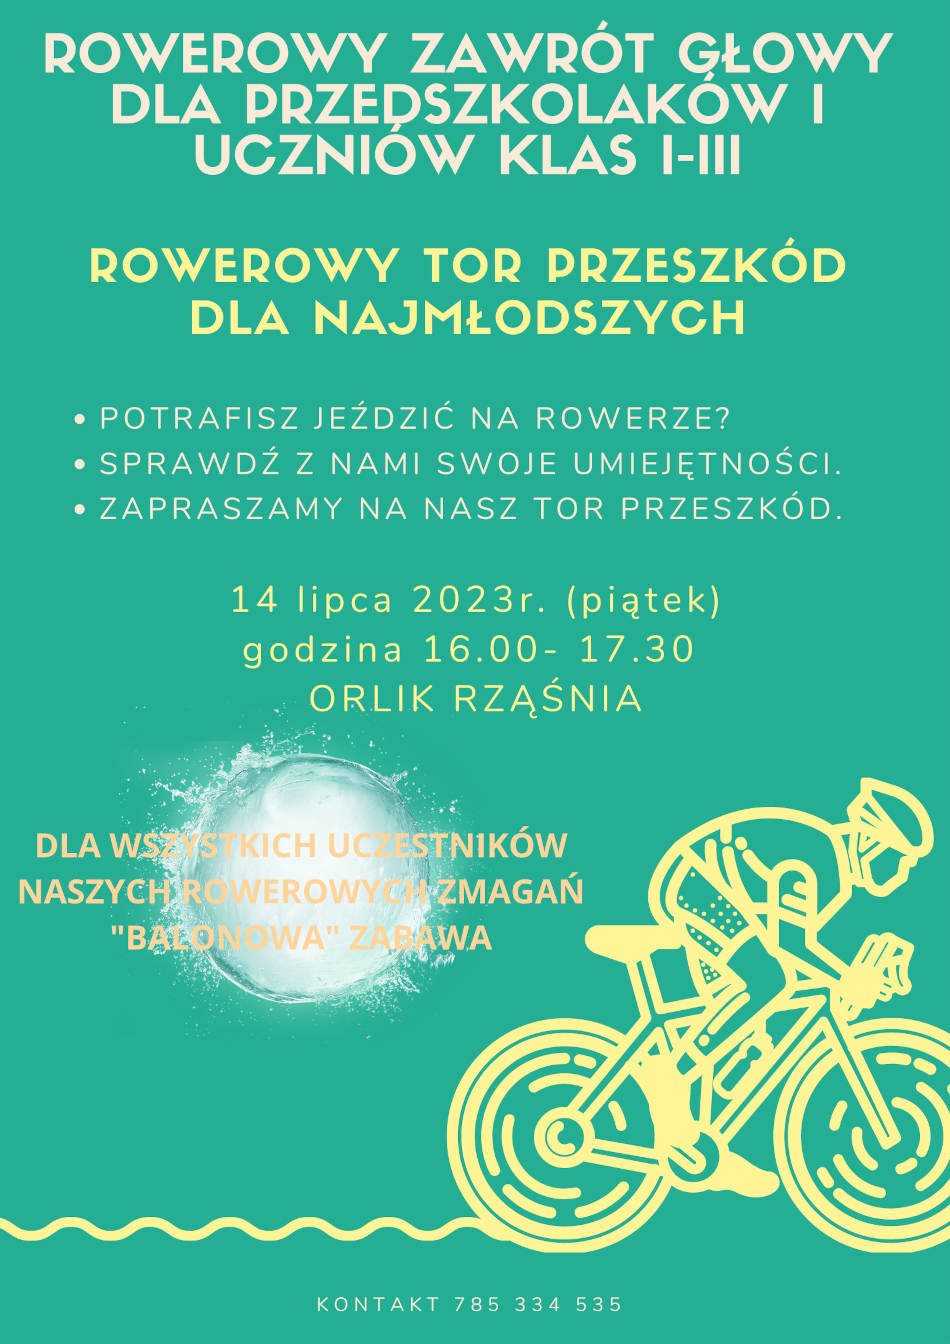 Zielony Polski Rowerzysta. Zaproszenie